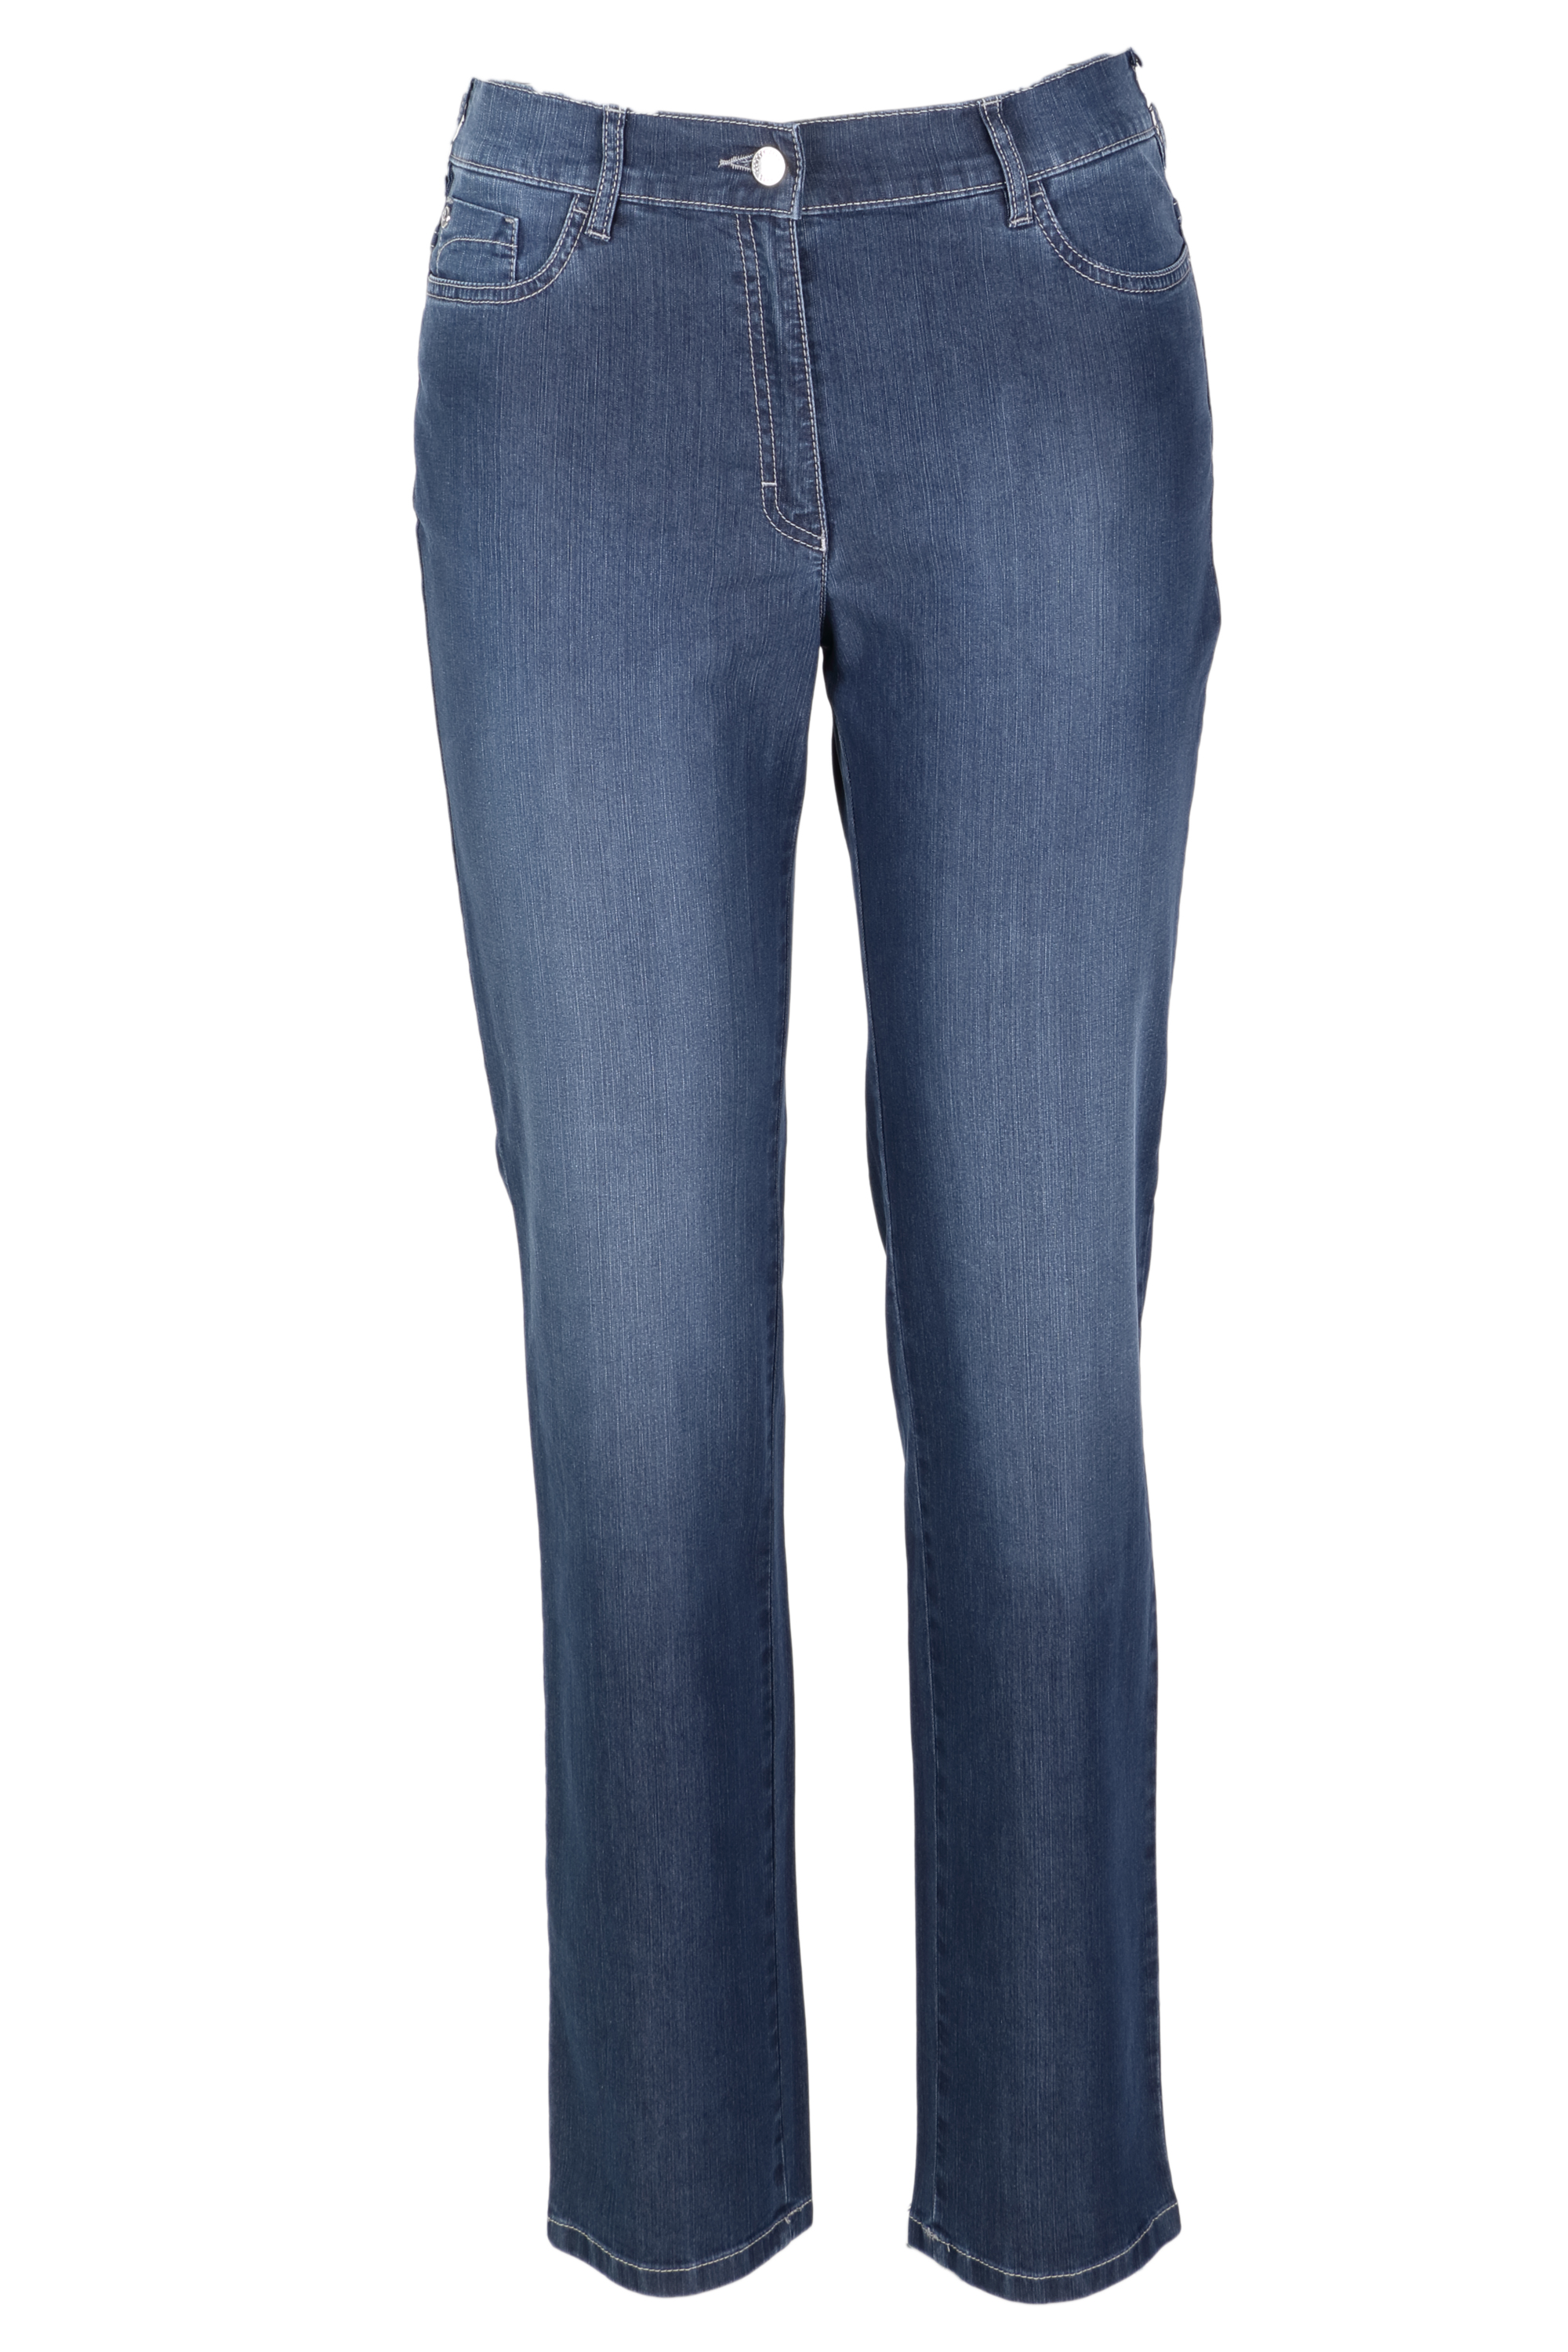 Zerres Damen Jeans Greta sommerliche Qualität - blau 40